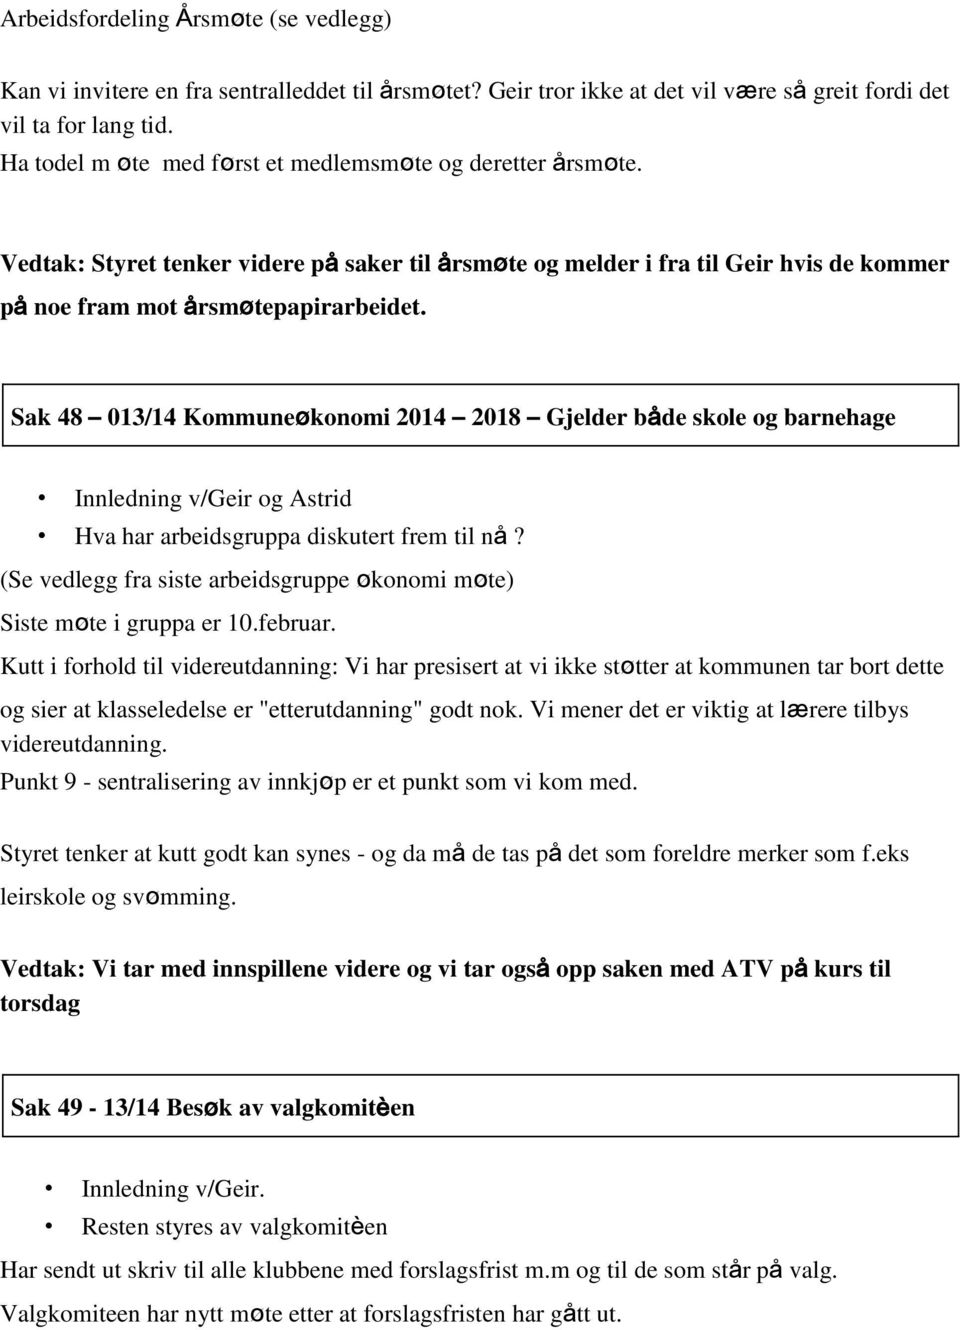 Sak 48 013/14 Kommuneøkonomi 2014 2018 Gjelder både skole og barnehage Innledning v/geir og Astrid Hva har arbeidsgruppa diskutert frem til nå?